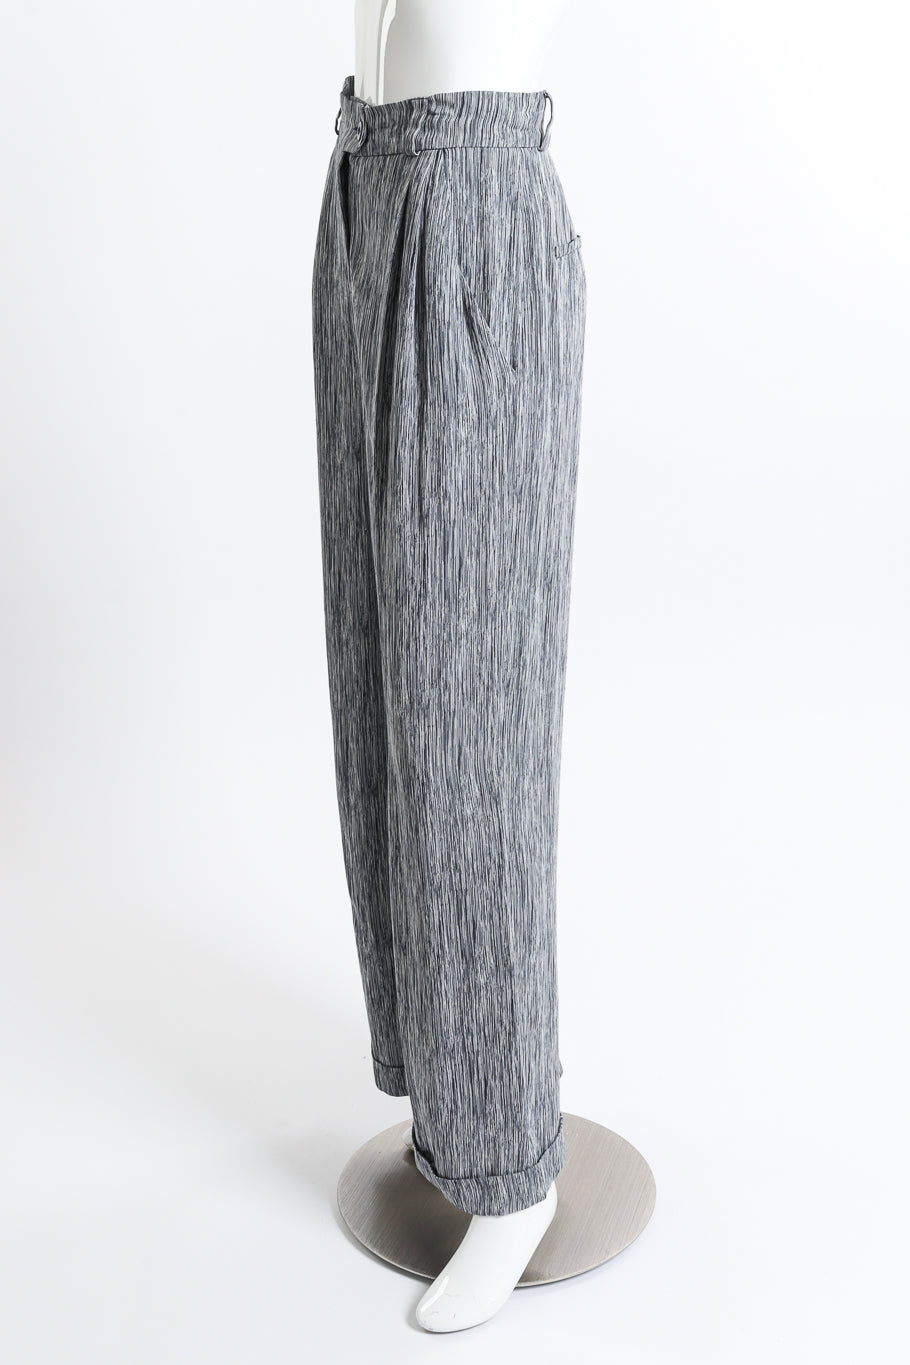 Chloé Woodgrain Stripe Jacket & Pant Set pant side on mannequin @recess la